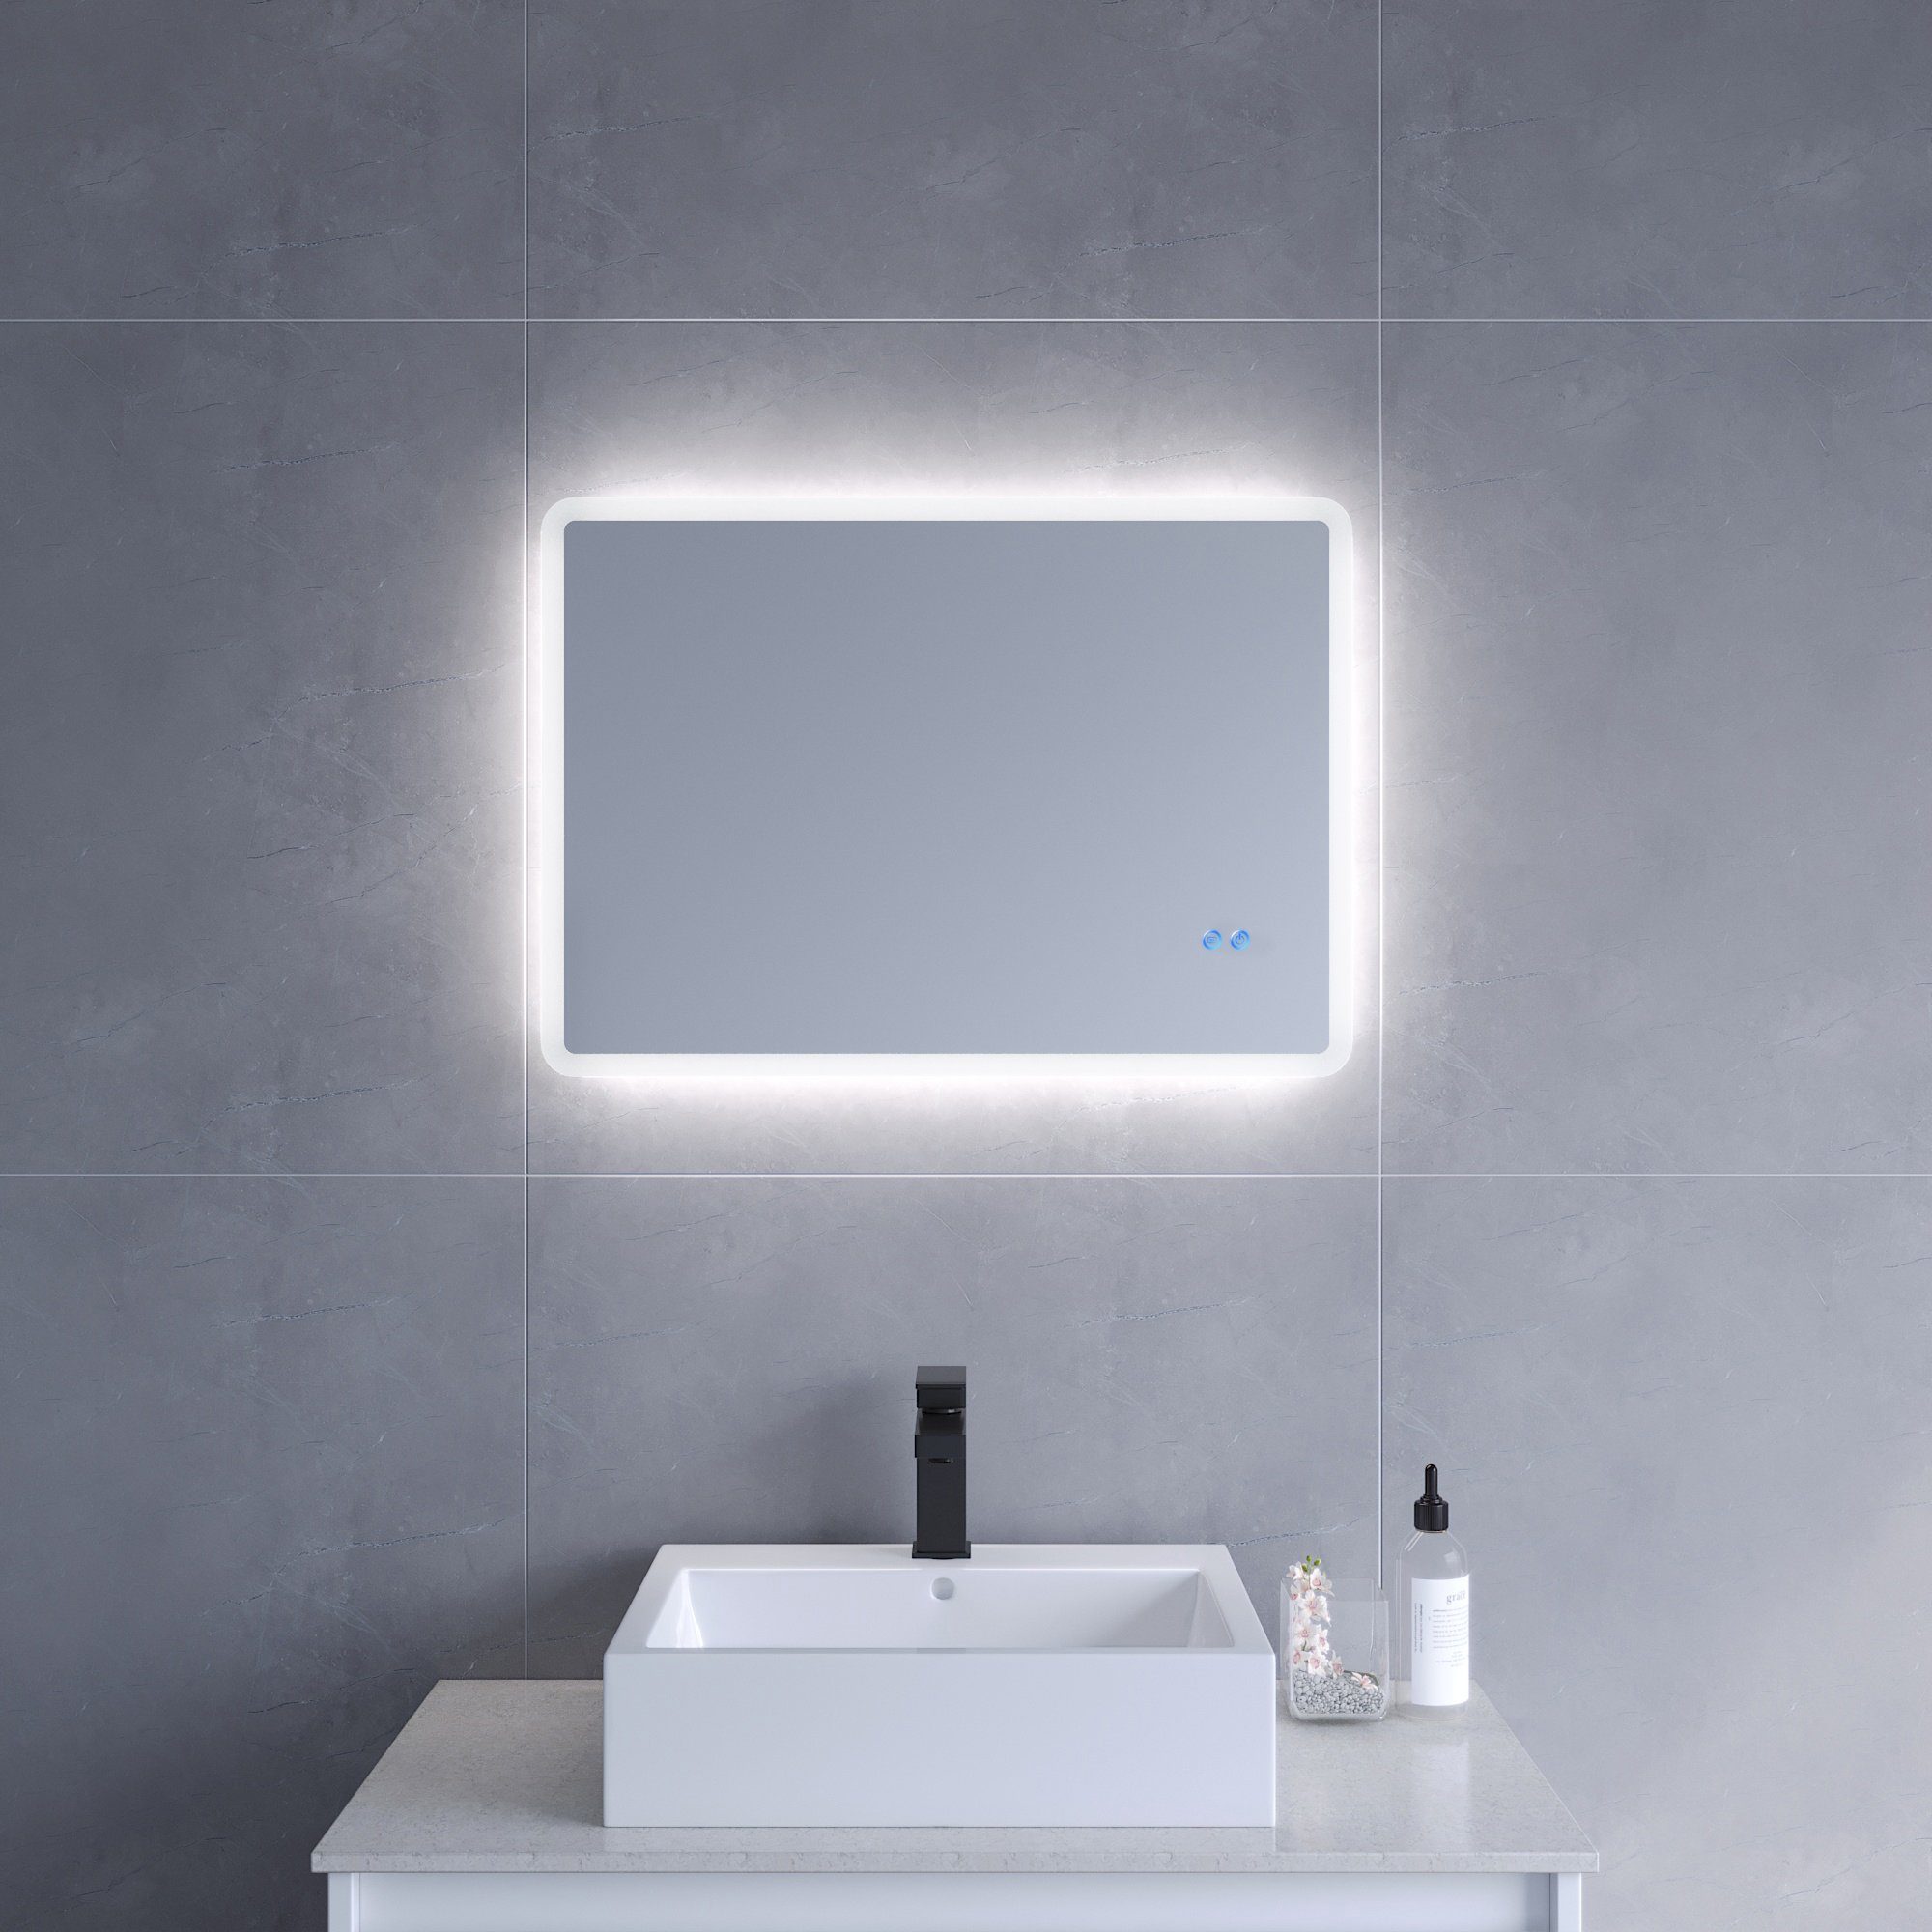 AQUALAVOS Badspiegel LED Badspiegel mit Beleuchtet Touch Dimmbar Antibeschlag Wandspiegel, Kaltweiß 6400K, Horizontale / vertikale Aufhängung